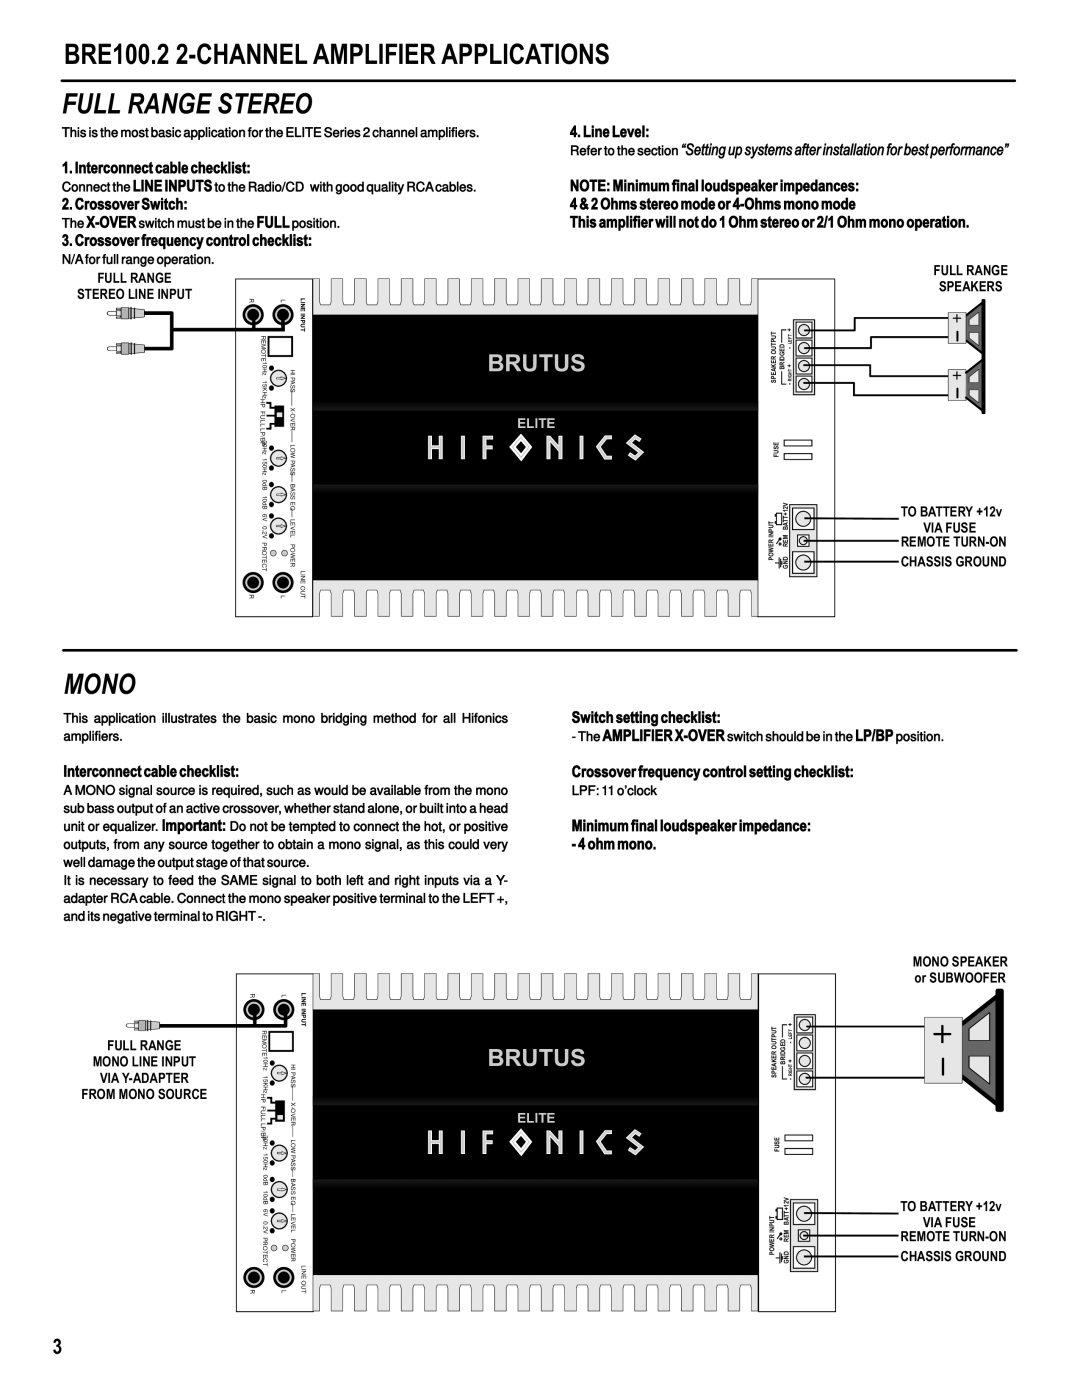 Hifionics BRE1600.1D BRE2000.1D, BRE2500.1D BRE100.2 2-CHANNELAMPLIFIER APPLICATIONS, Full Range Stereo, Mono, Brutus 